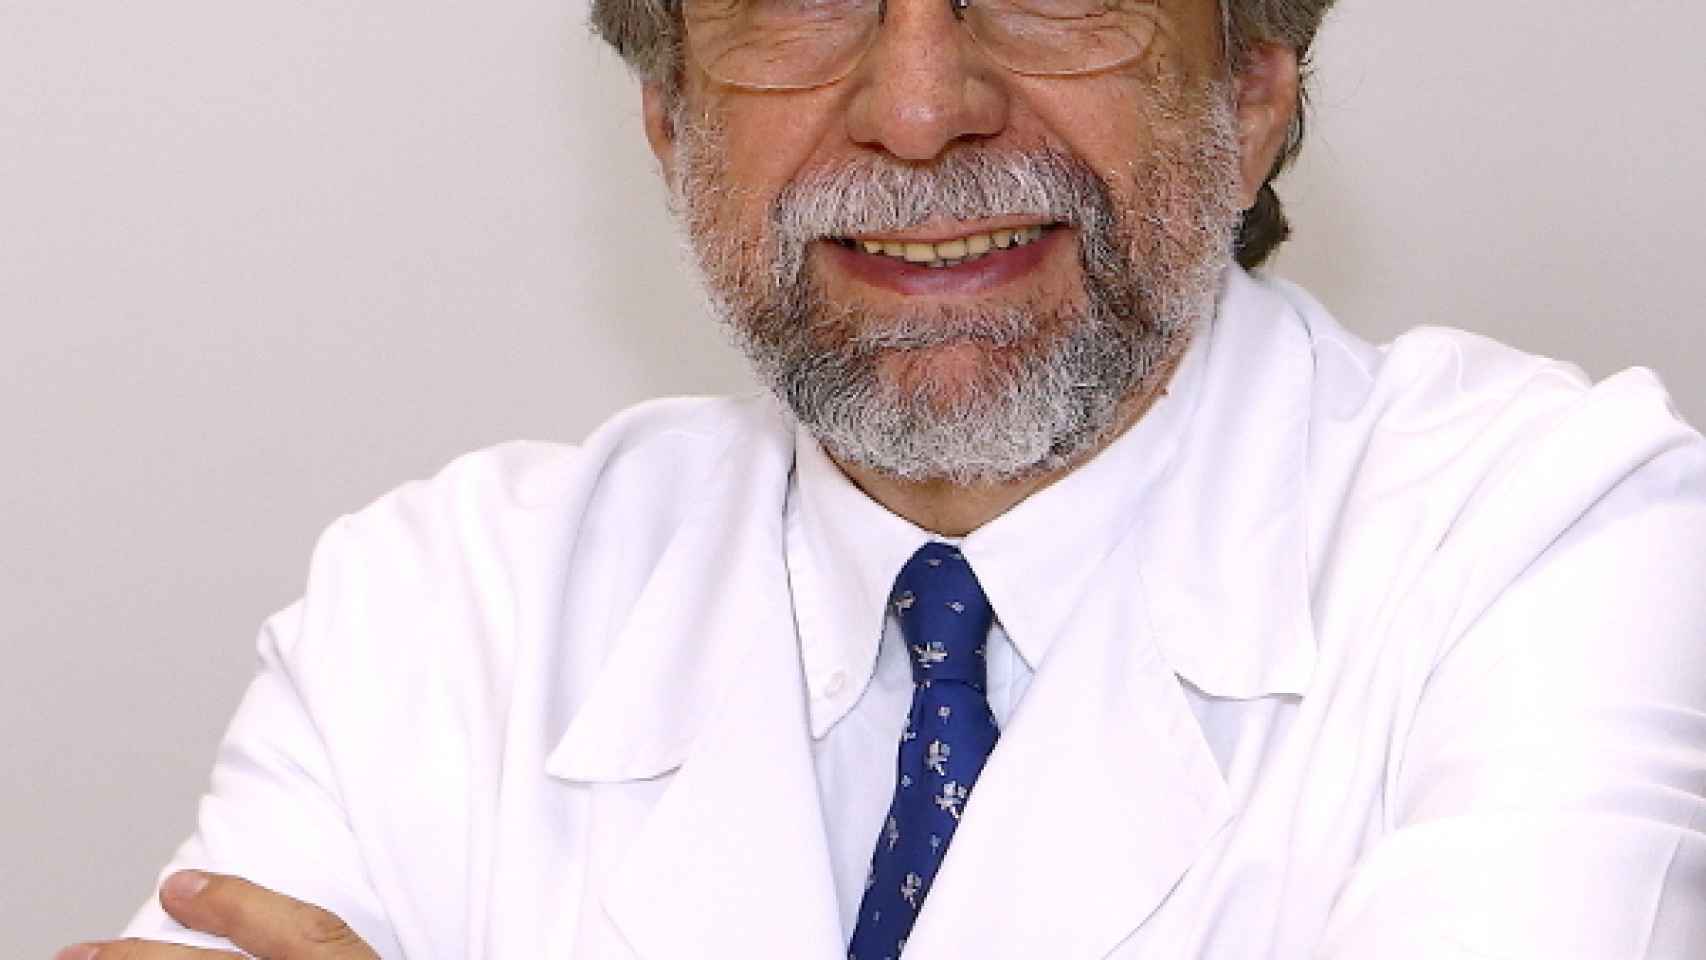 El doctor Antonio Escribano jefe del área de nutrición de las Federaciones Españolas de Baloncesto y Fútbol